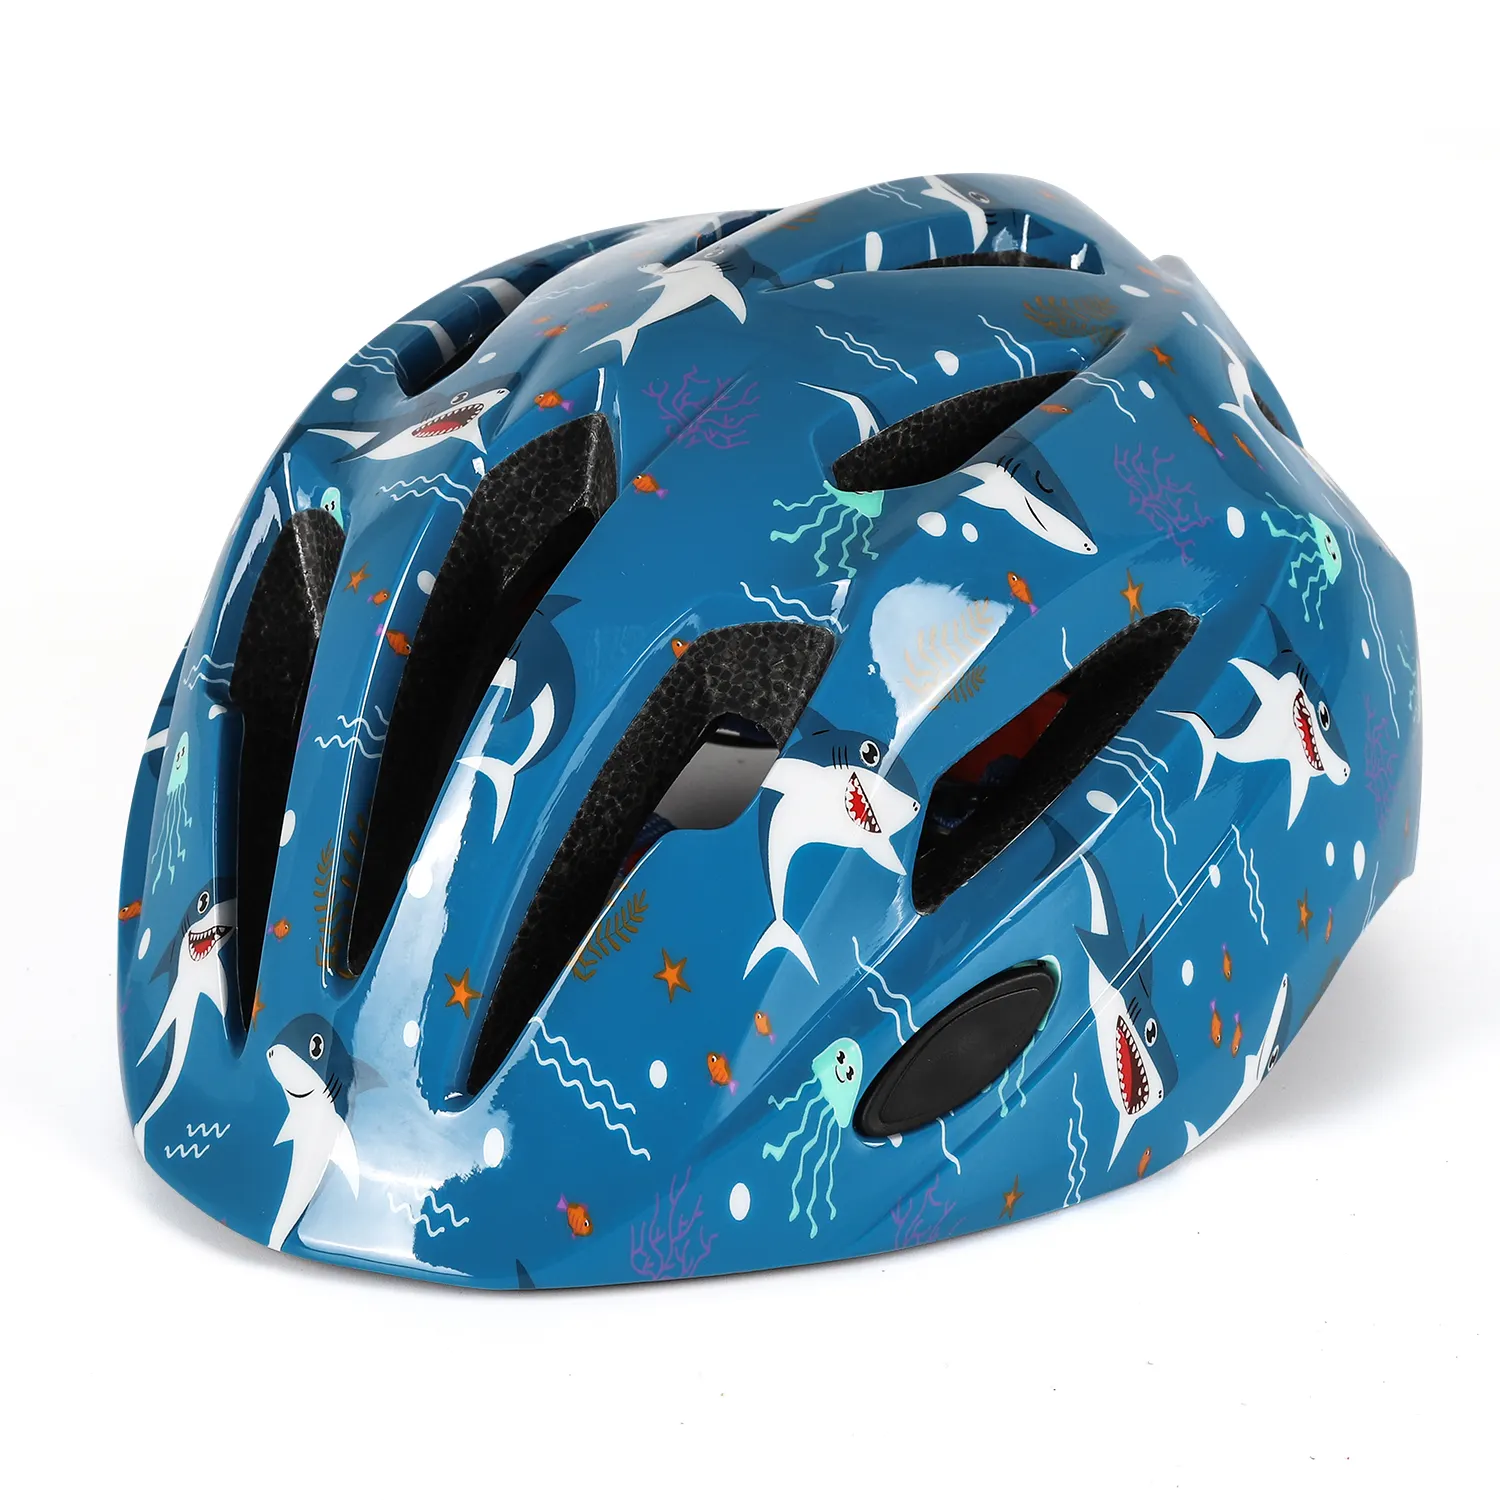 Capacete de ciclismo para crianças, mais novo capacete esportivo ajustável para andar de bicicleta, skate, scooter, proteção, segurança, capacete infantil